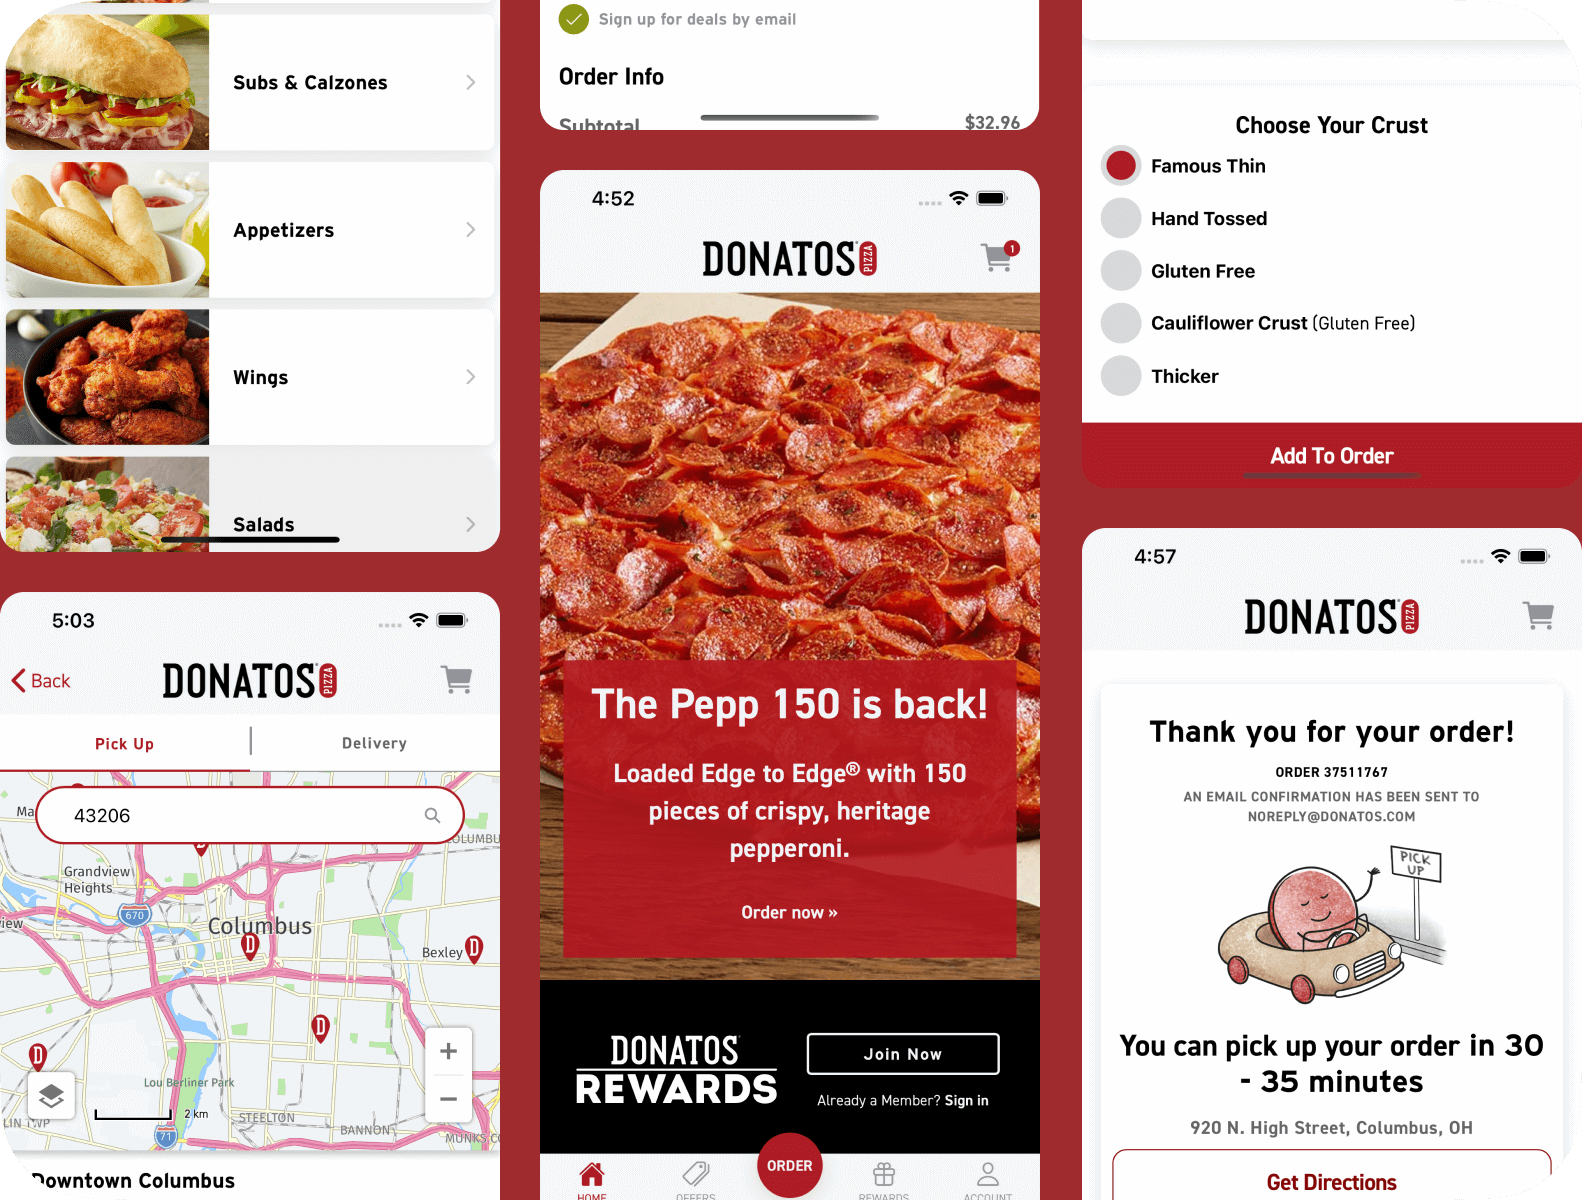 Screenshots of Donatos Pizza app order and menu screens.